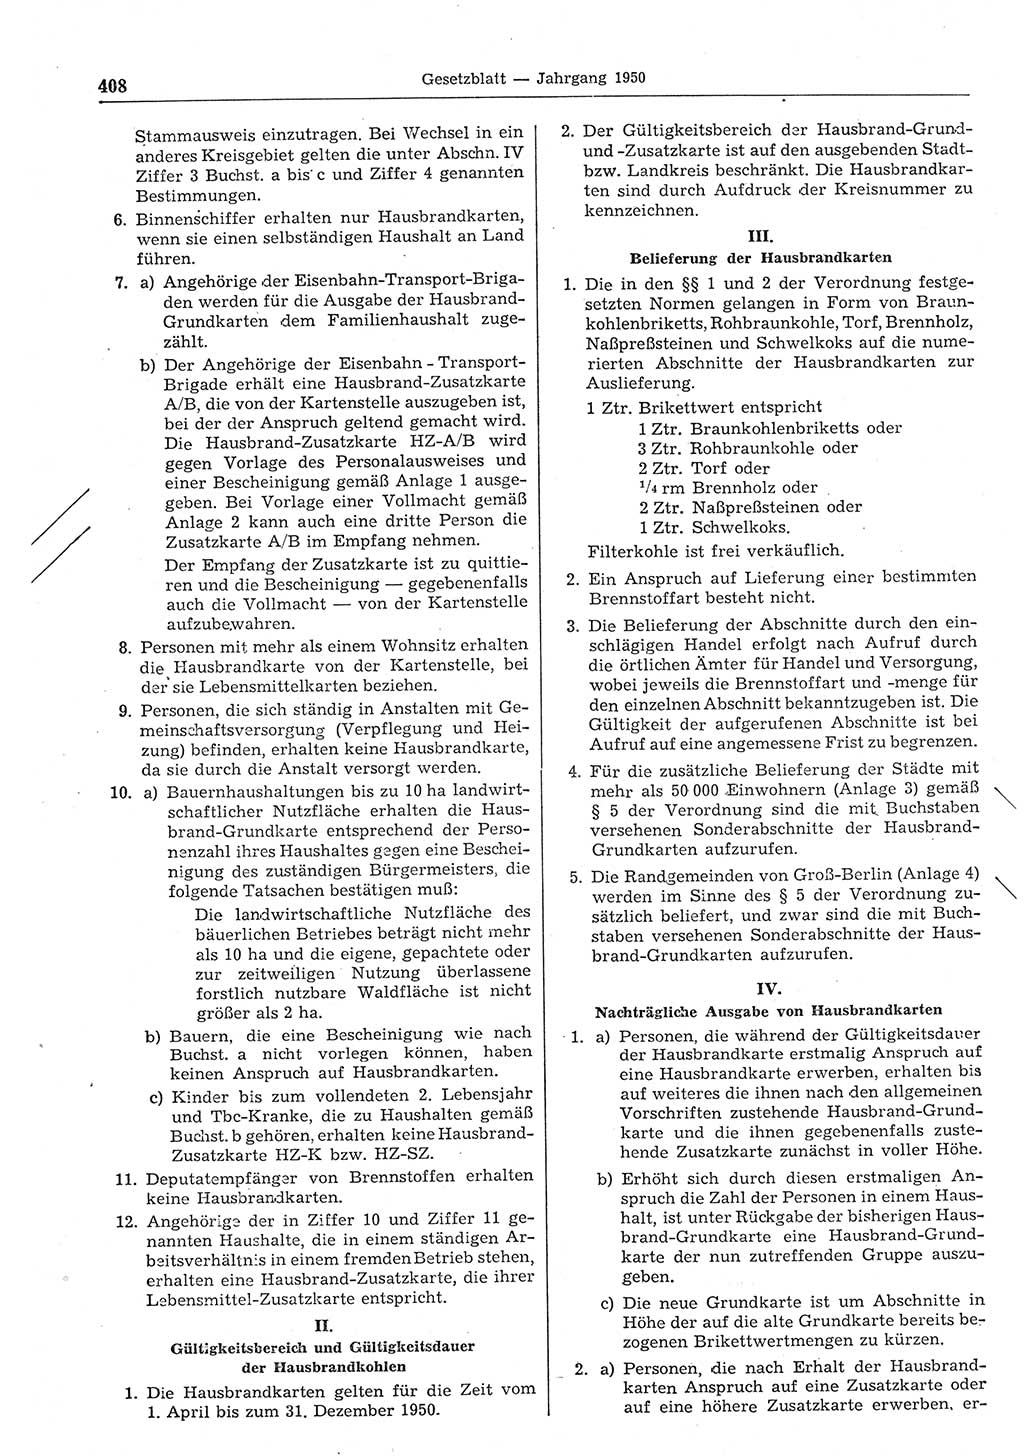 Gesetzblatt (GBl.) der Deutschen Demokratischen Republik (DDR) 1950, Seite 408 (GBl. DDR 1950, S. 408)